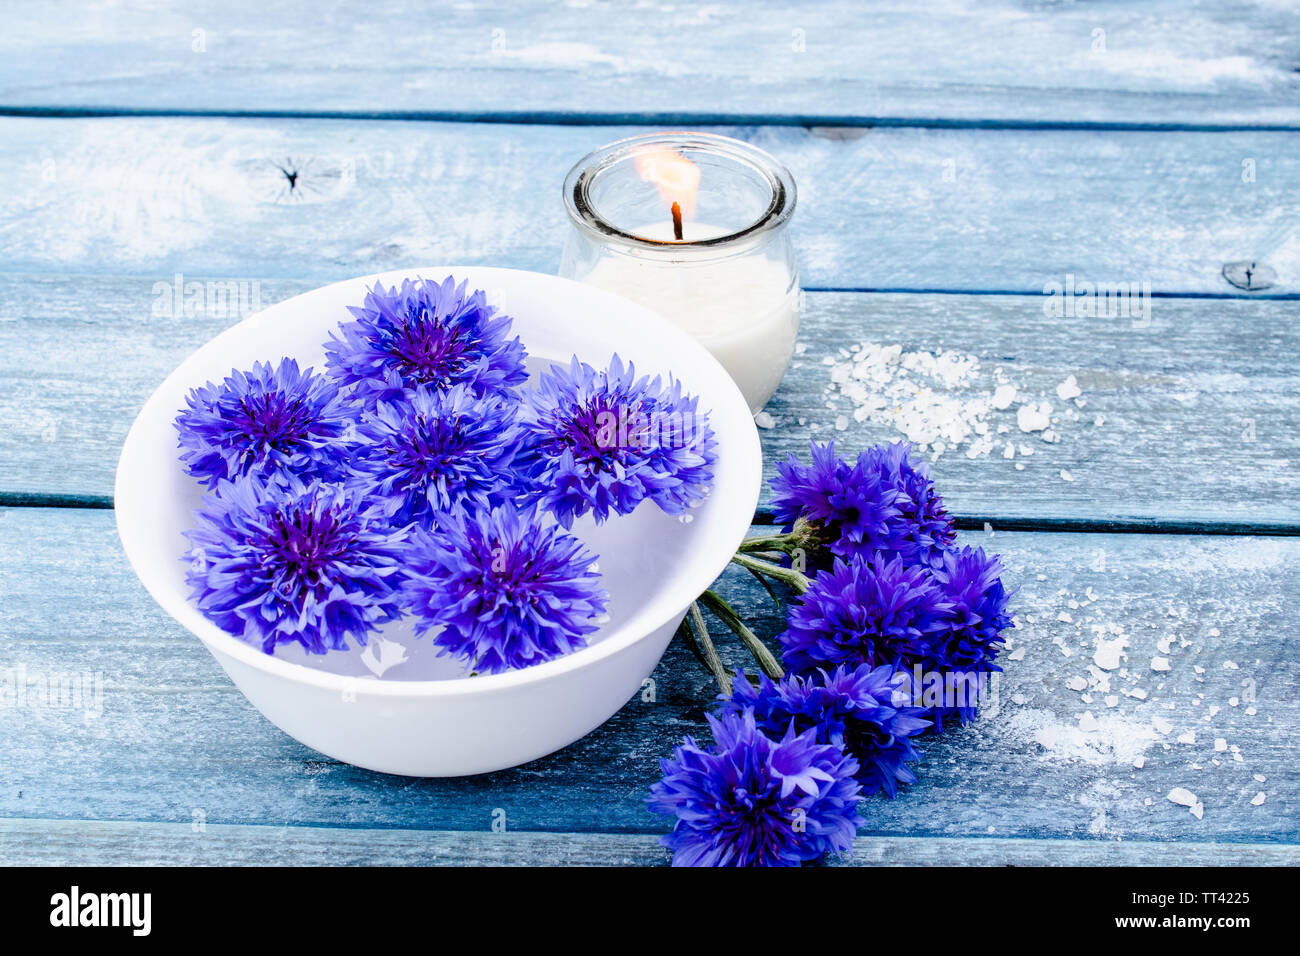 Blue cornflowers giacciono in acqua in una vaschetta bianca in prossimità di una candela che brucia contro lo sfondo di colore blu vecchie schede madri. close-up Foto Stock